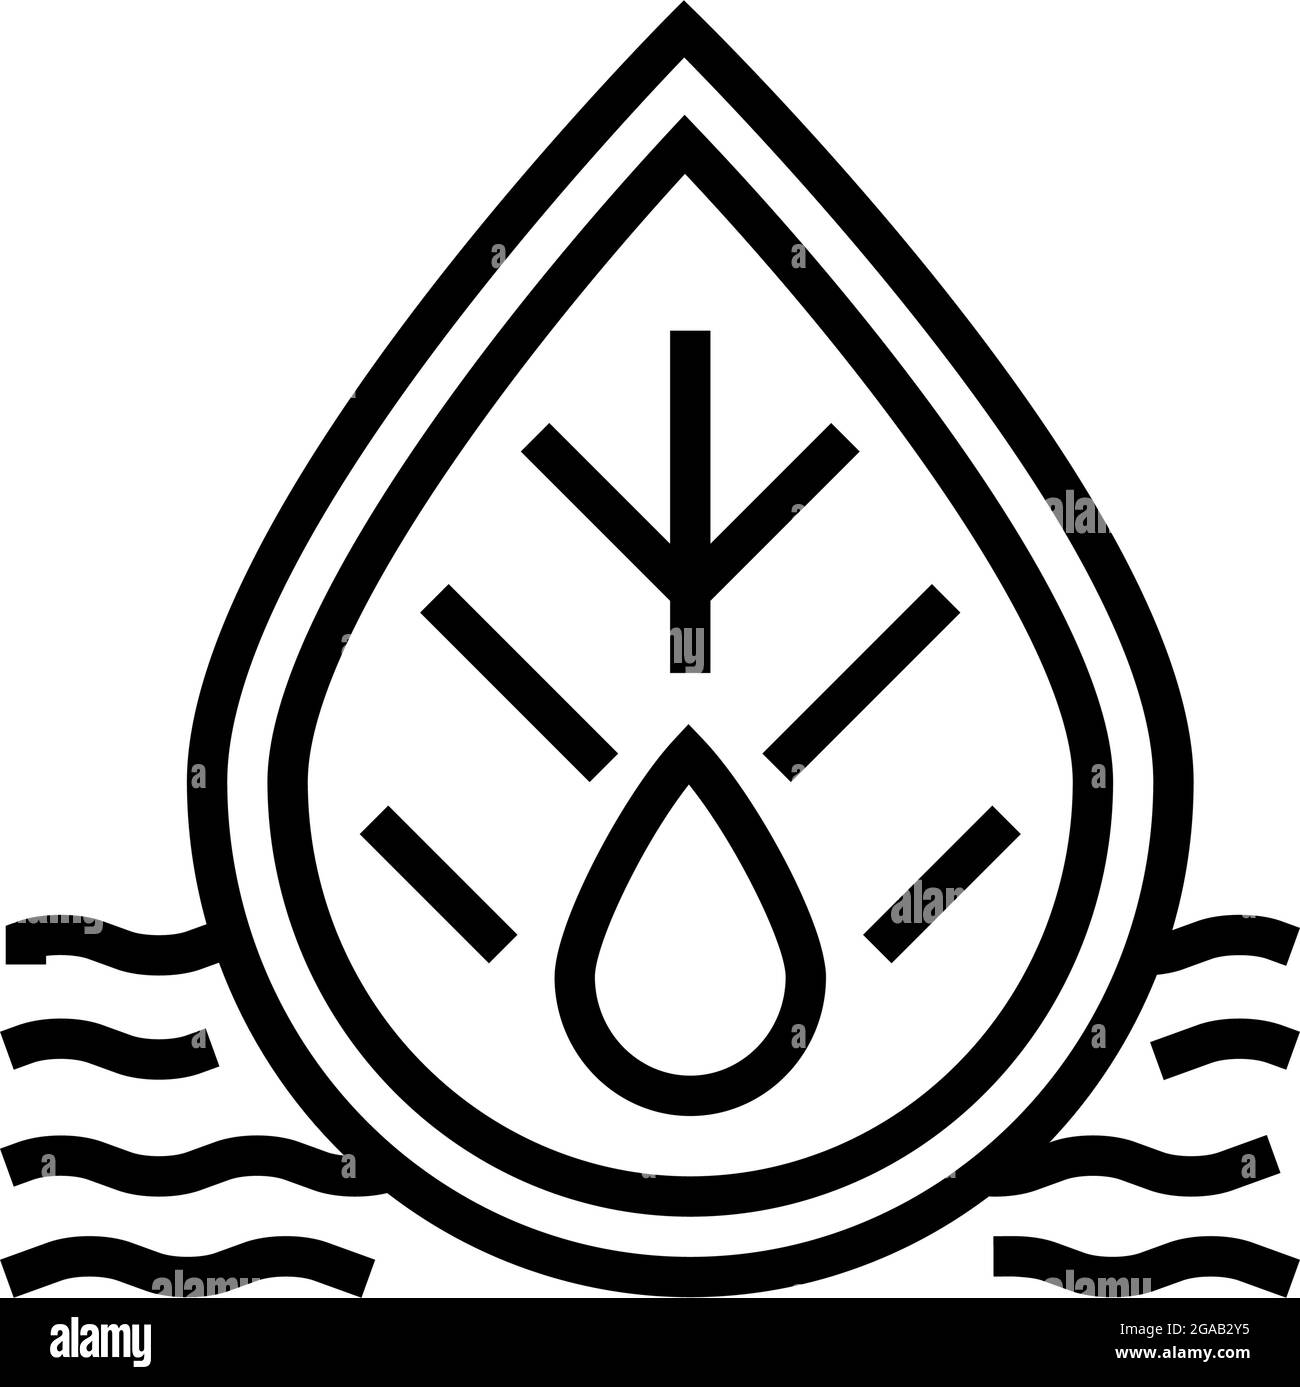 Abbildung des Symbols für die Qualität des Abwassers und der umgebenden Wasserlinie Stock Vektor